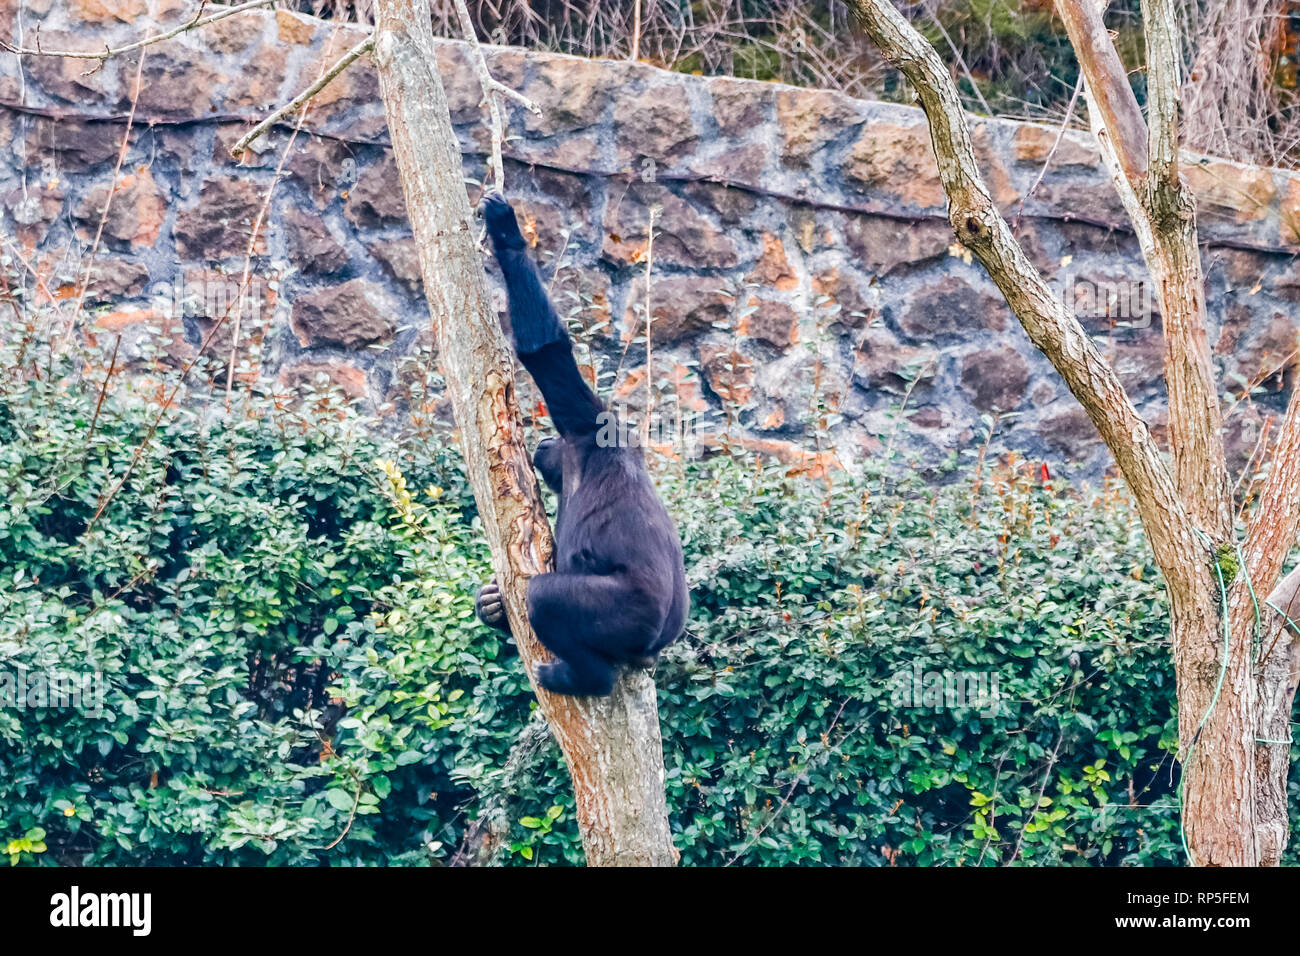 Gorilas En el Parque Nacional de Cabarceno Foto de stock